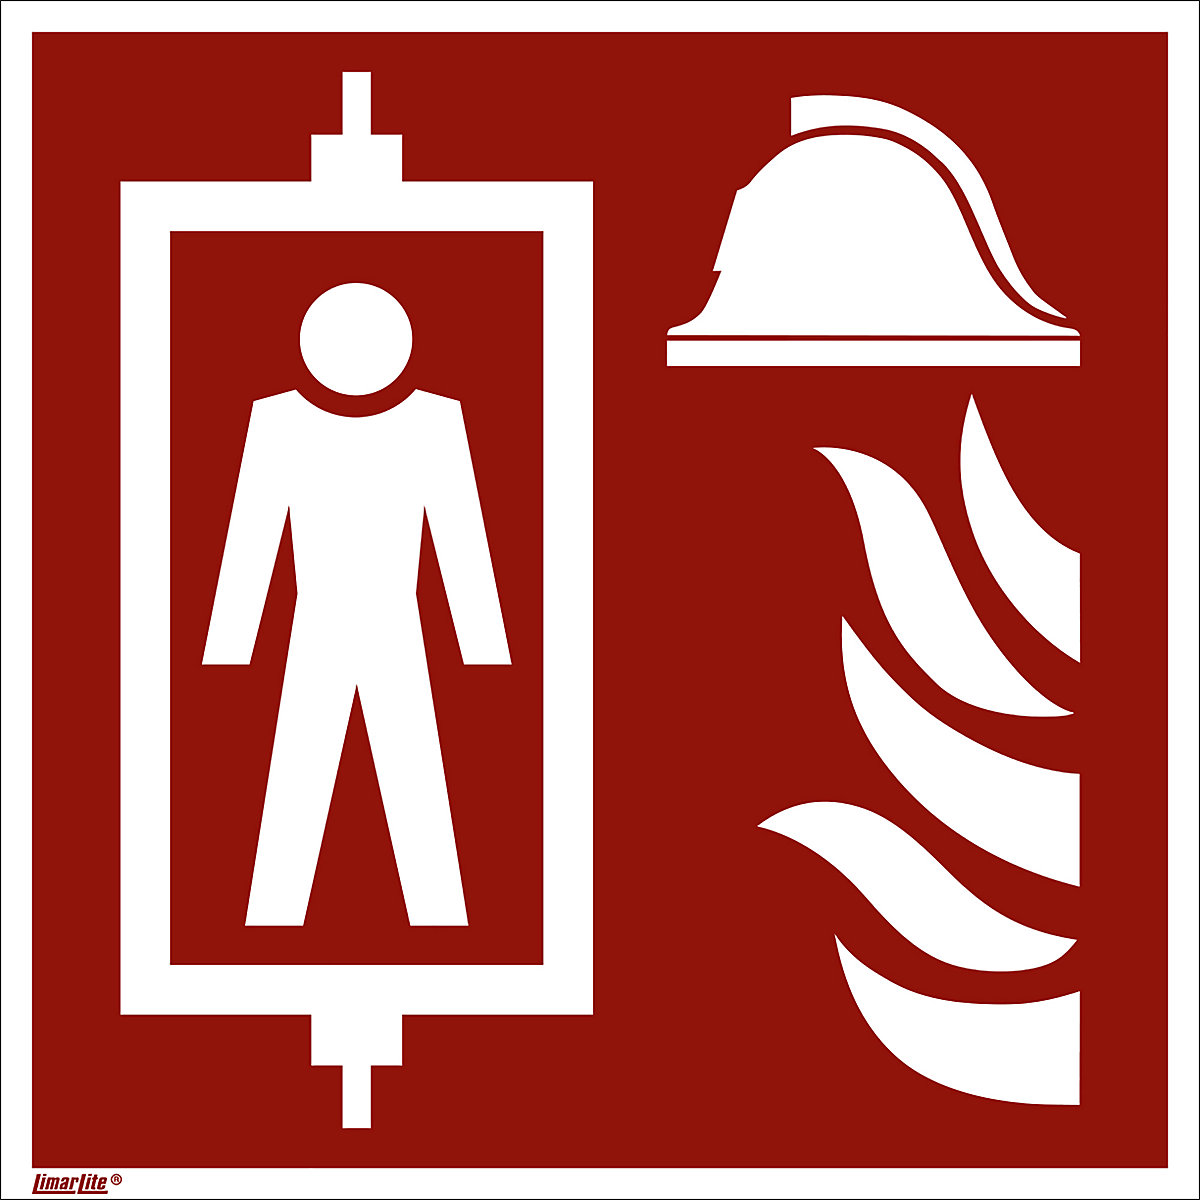 Značka pro ochranu proti požáru, požární výtah, bal.j. 10 ks, hliník, 150 x 150 mm